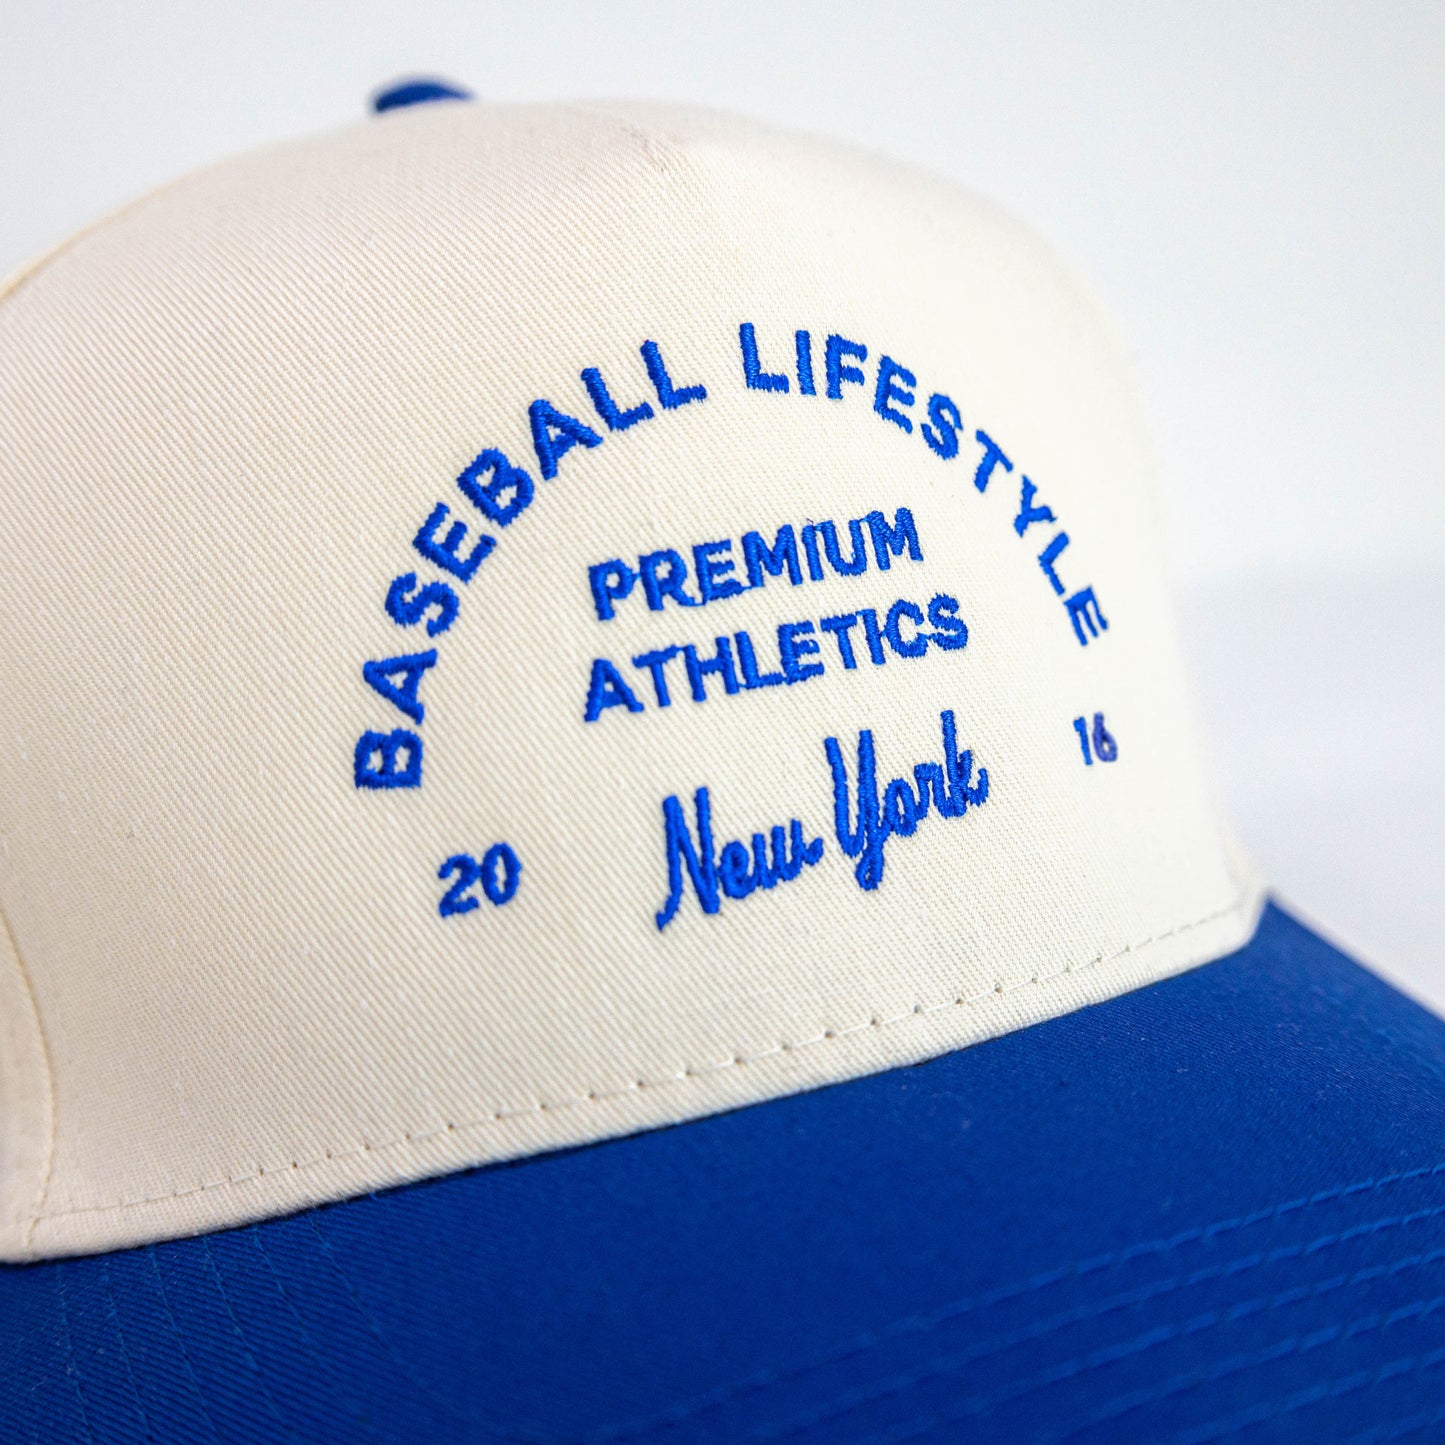 Premium Athletics Snapback Hat - Cream/Blue